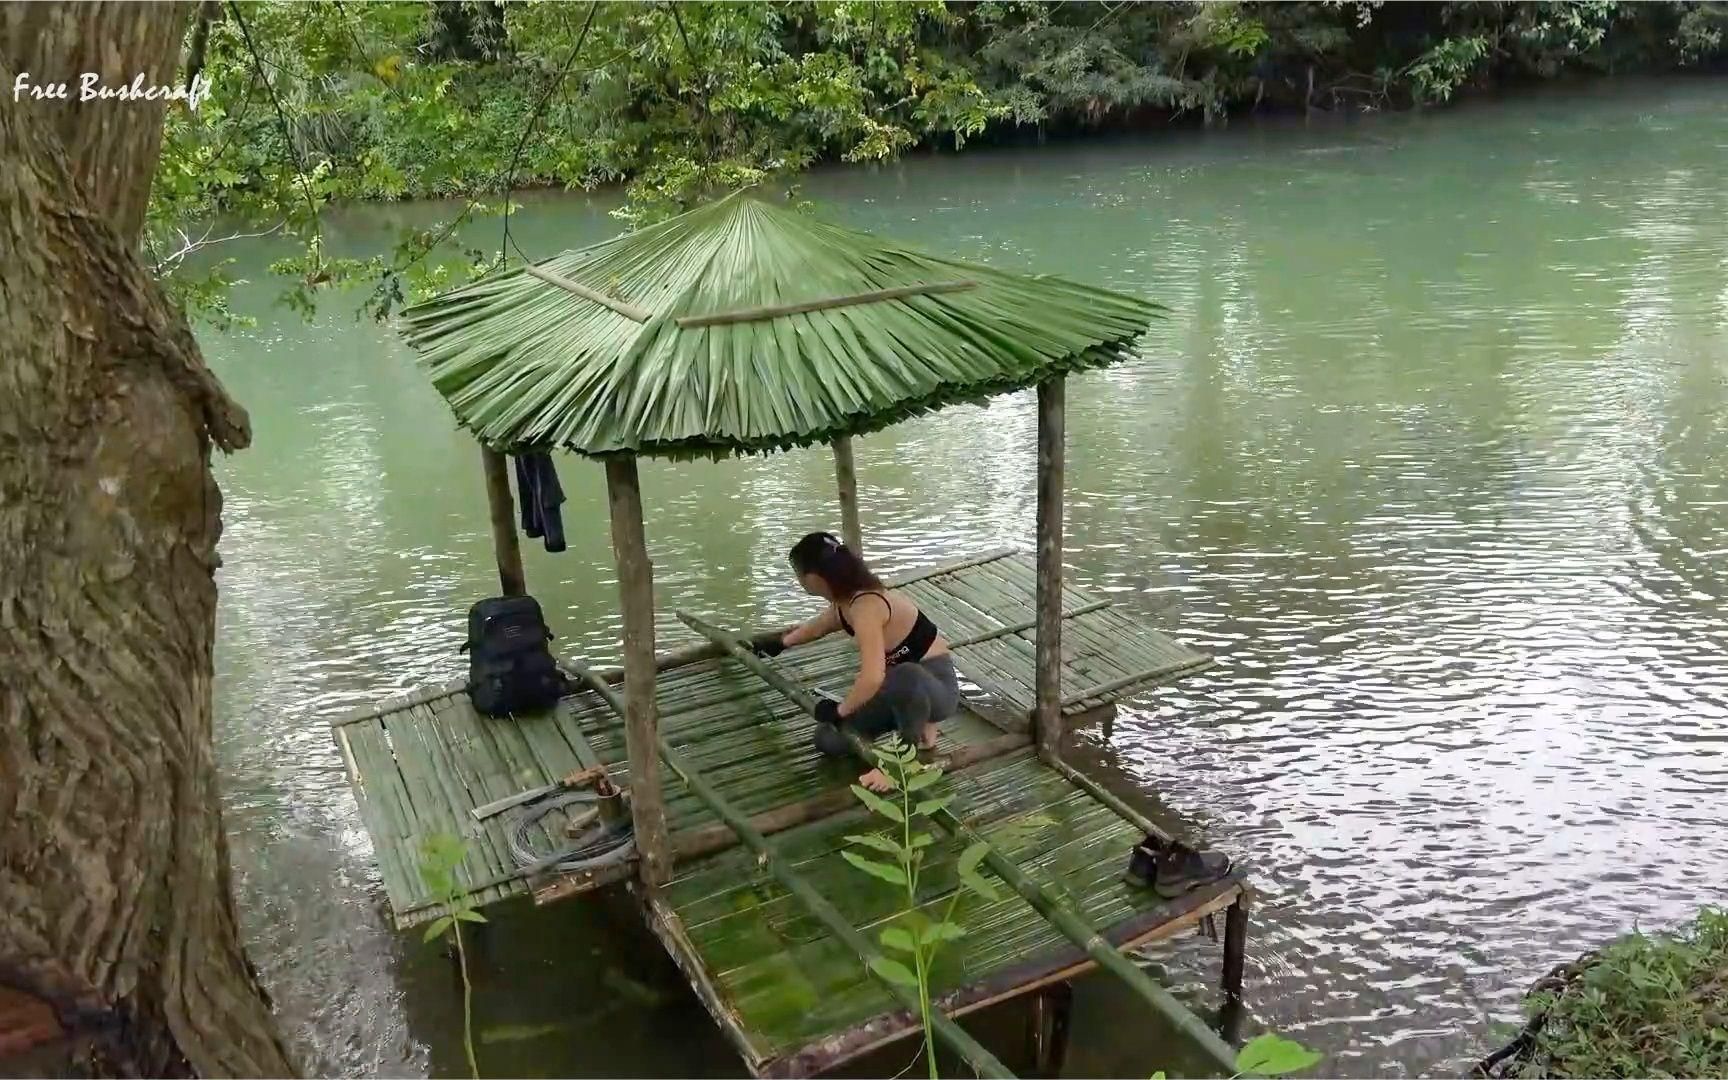 户外雨林 美女雨中制作竹桥 看到这个美景好想高歌一曲